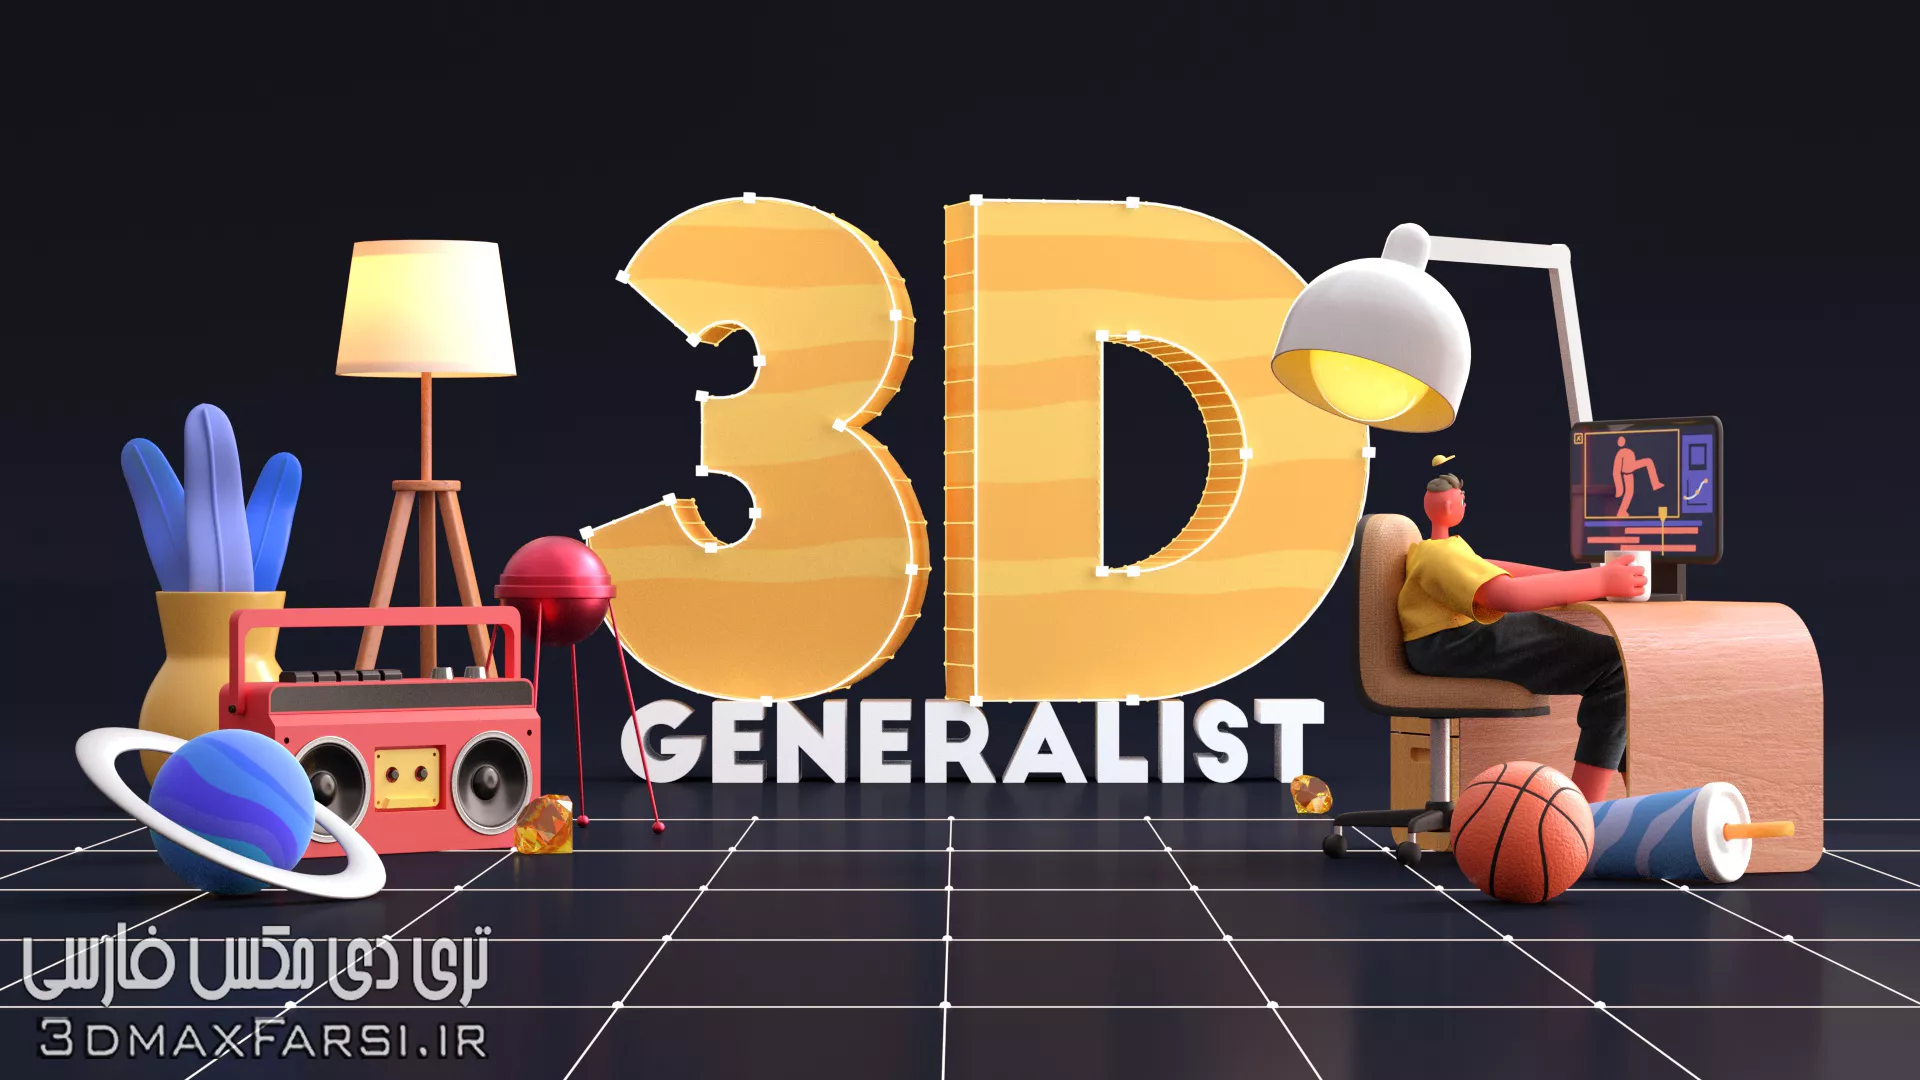 دانلود رایگان آموزش Motion Design School – 3D Generalist